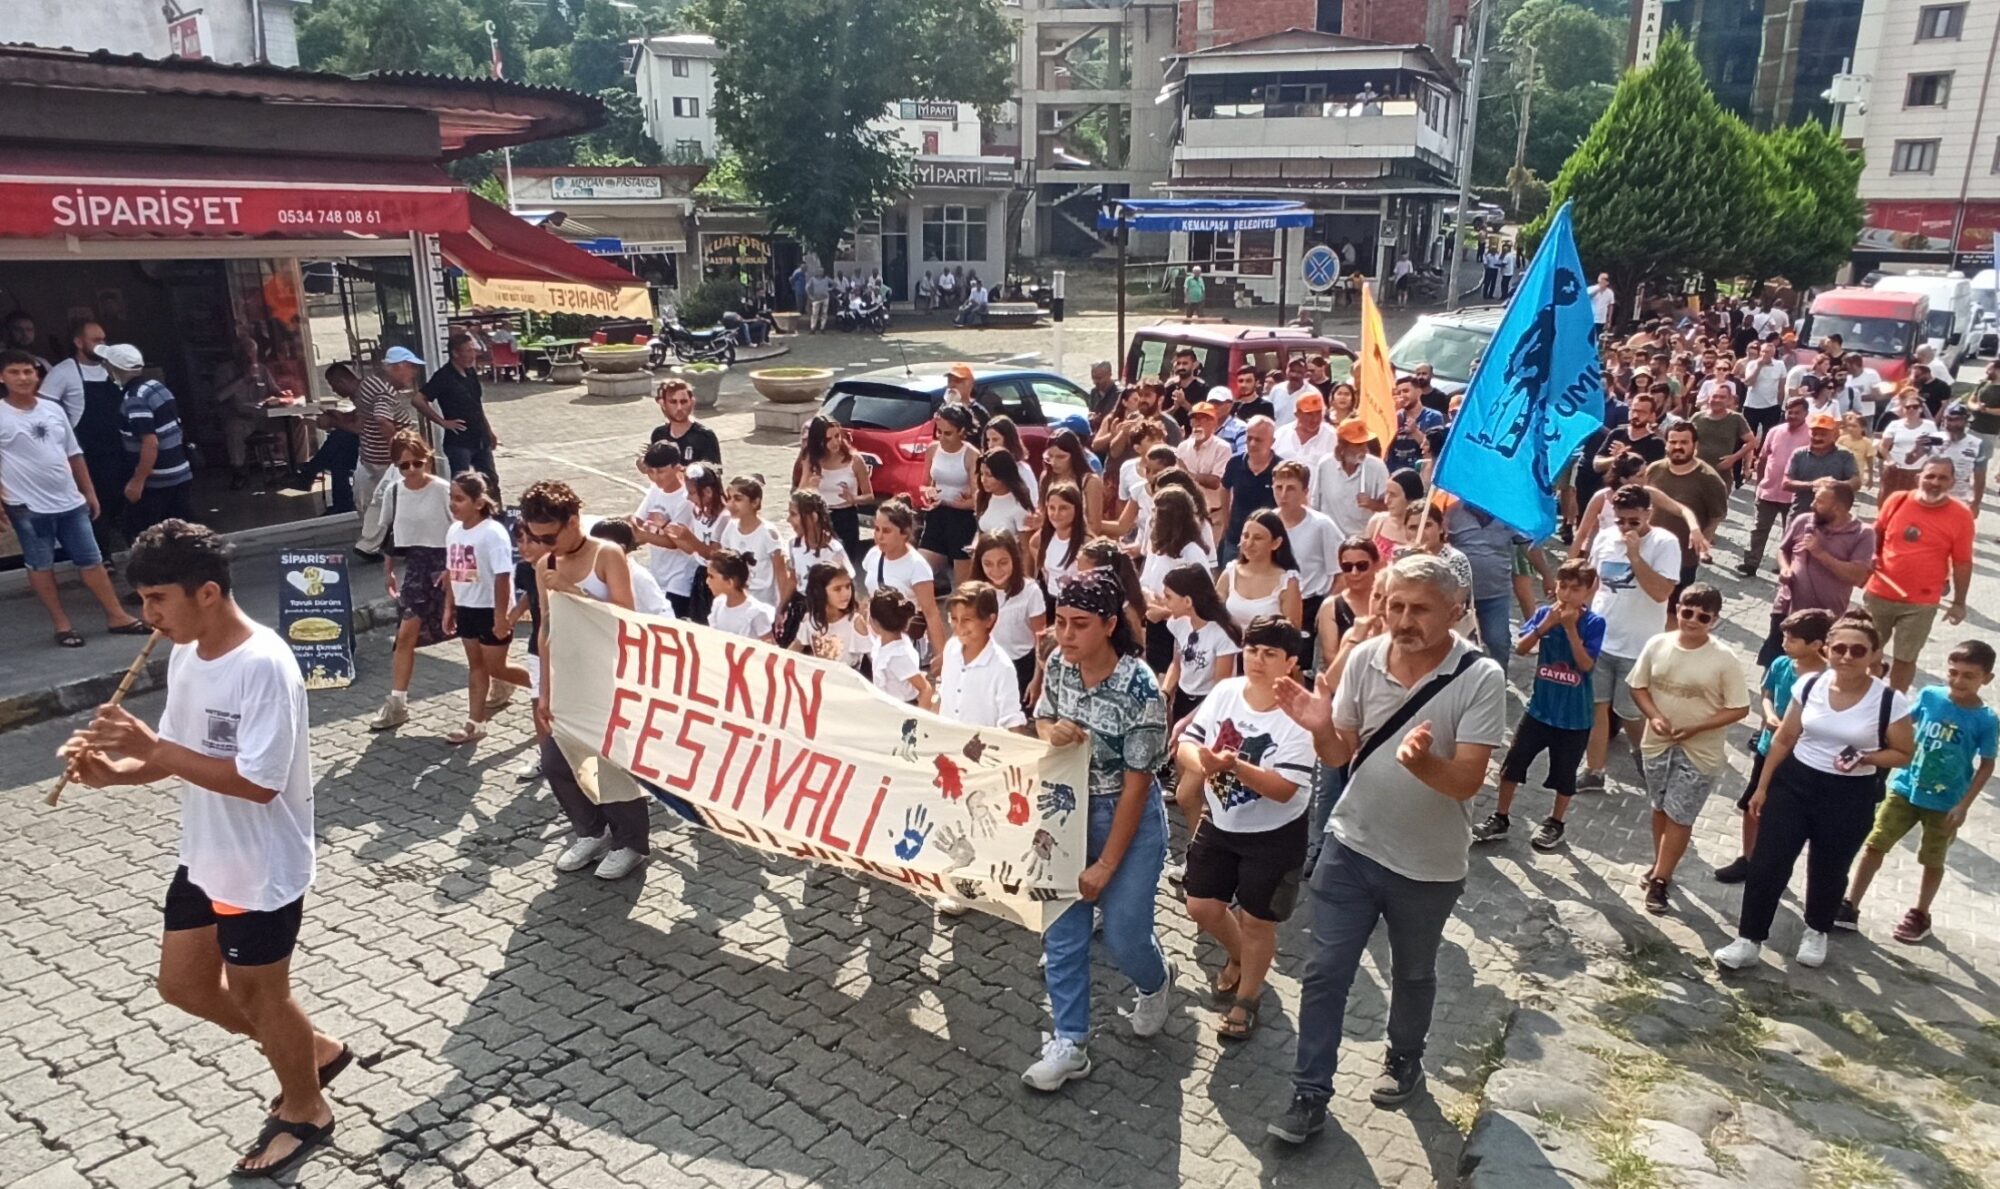 Kemalpaşa Halk Festivali başladı. Halkın festivali 17 yaşında